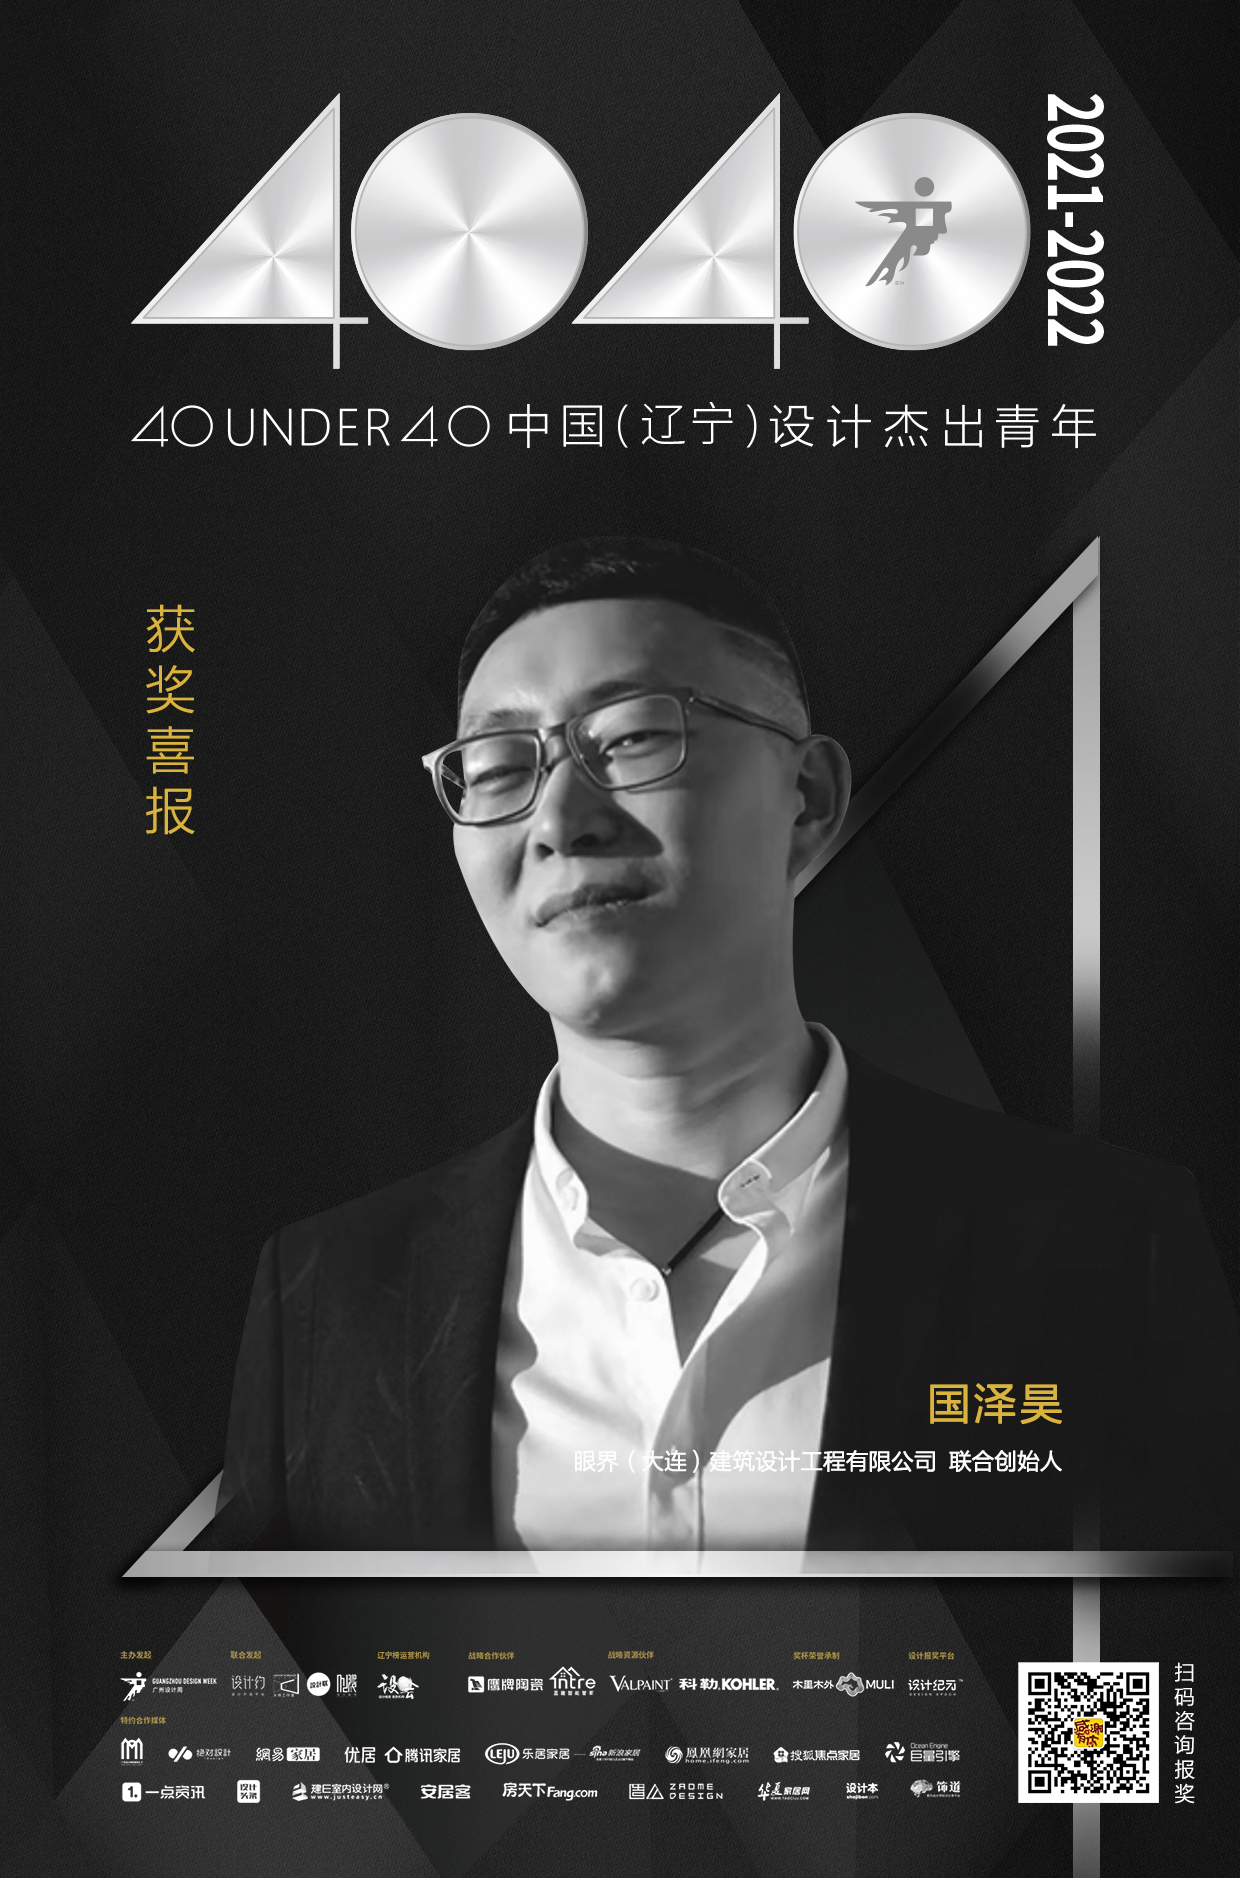 设计师国泽昊荣登40 UNDER 40辽宁设计杰出青年榜「Talk设计」